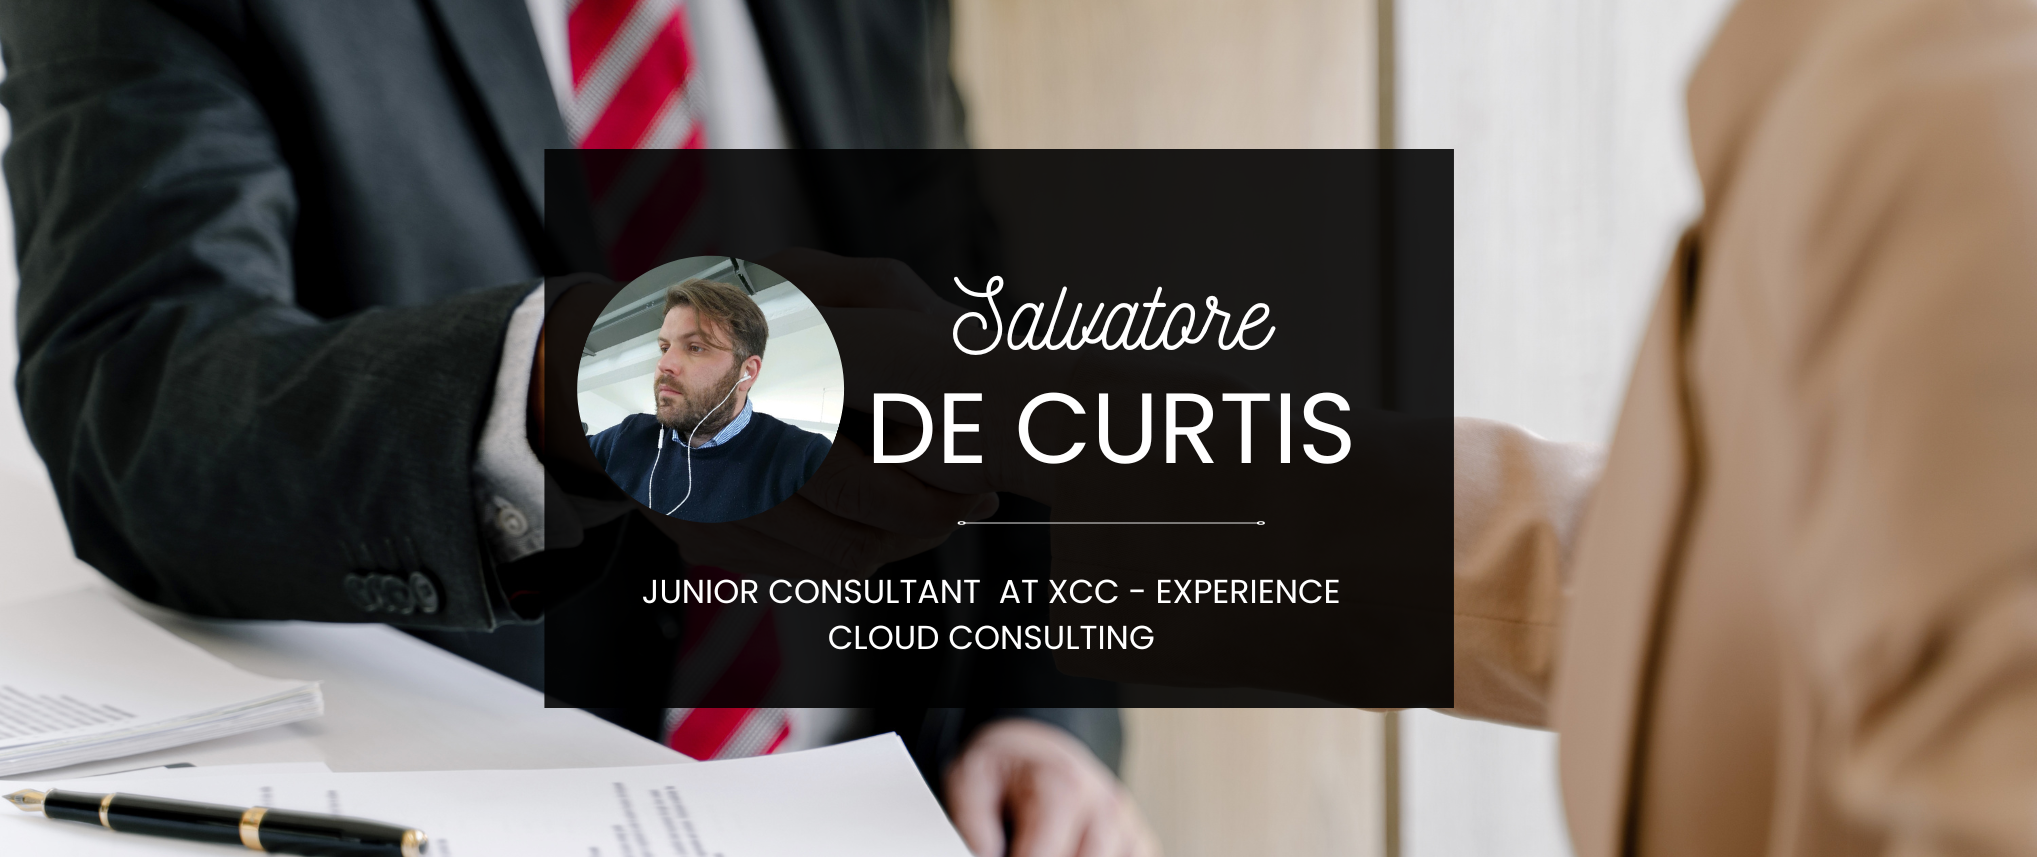 Rubrica XCC, il successo parte dai Consultant: Salvatore De Curtis